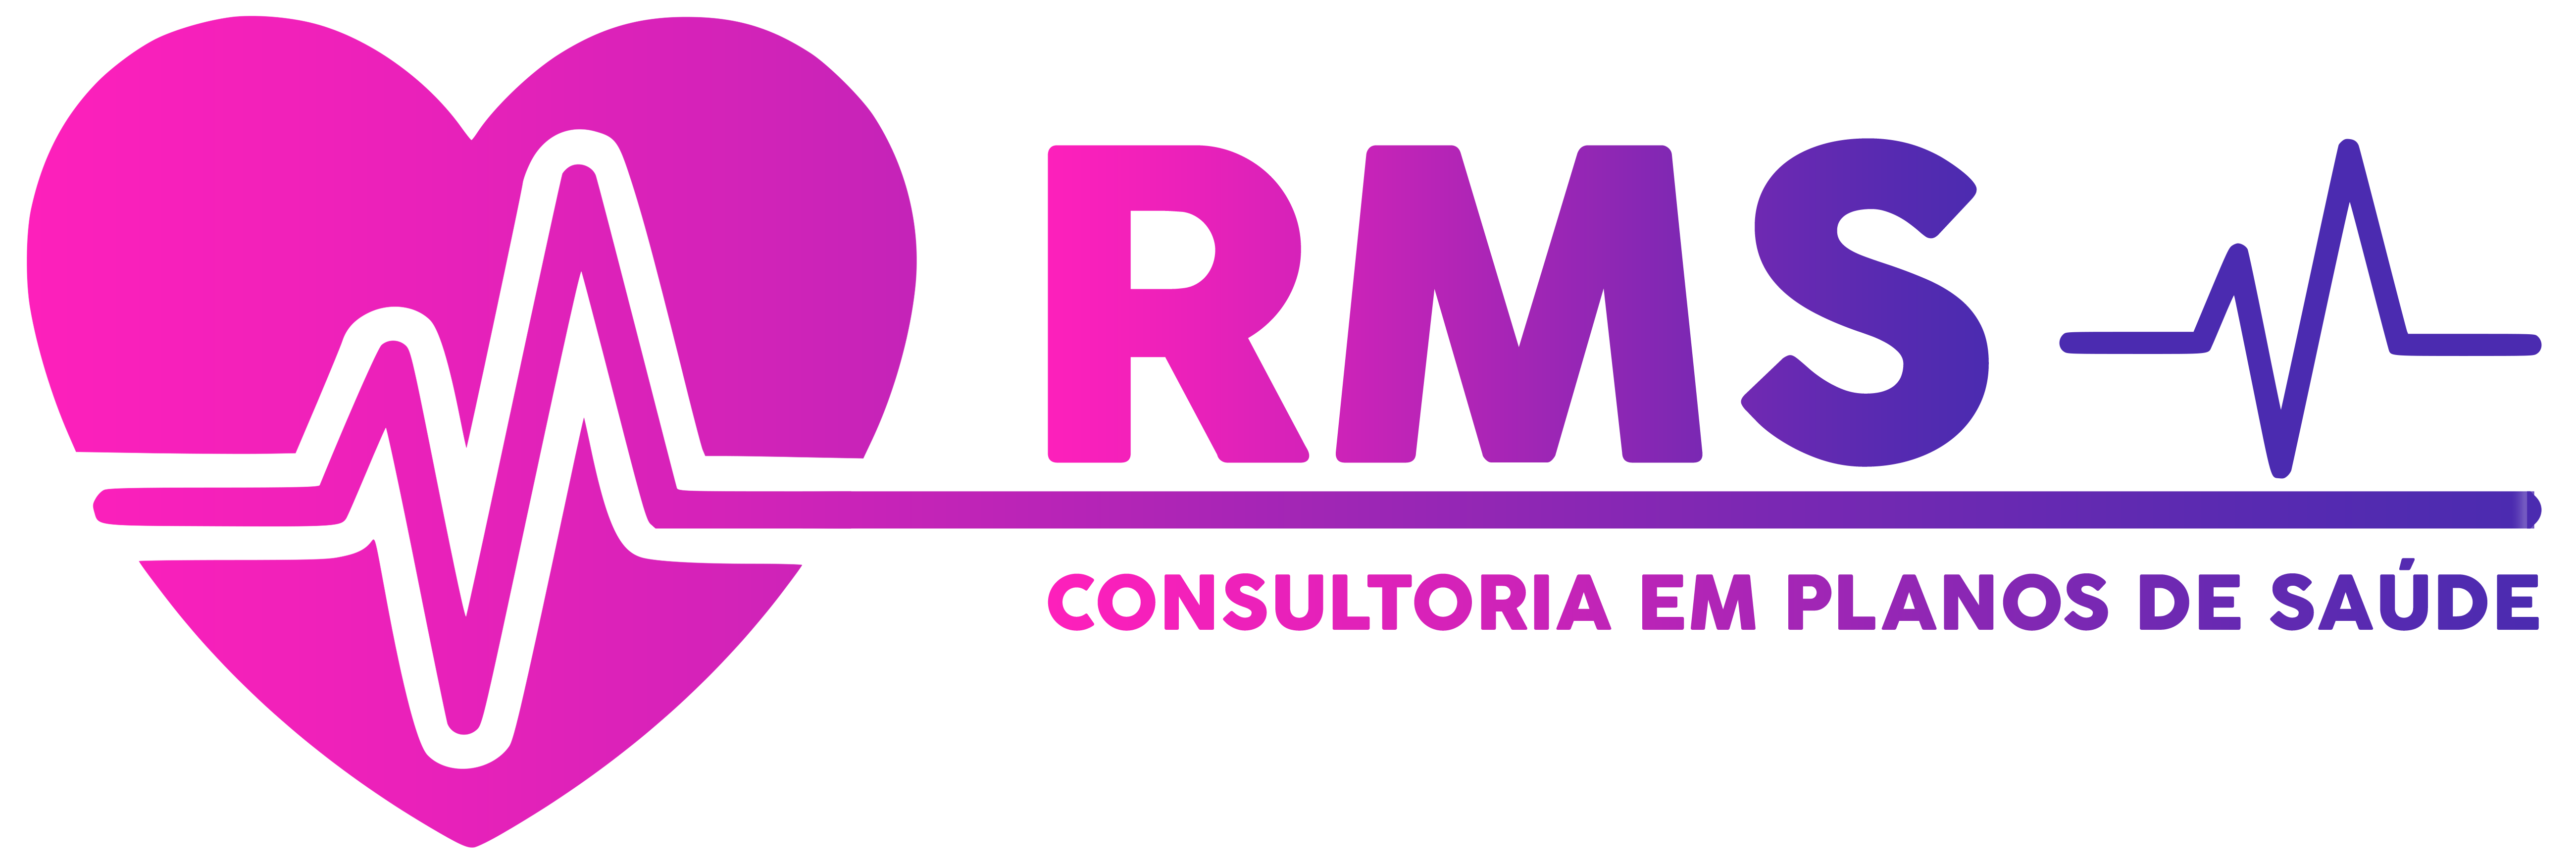 Rms - Consultoria em Planos de Saúde - Corretora Ingrid Rossin - (27) 98828-2674